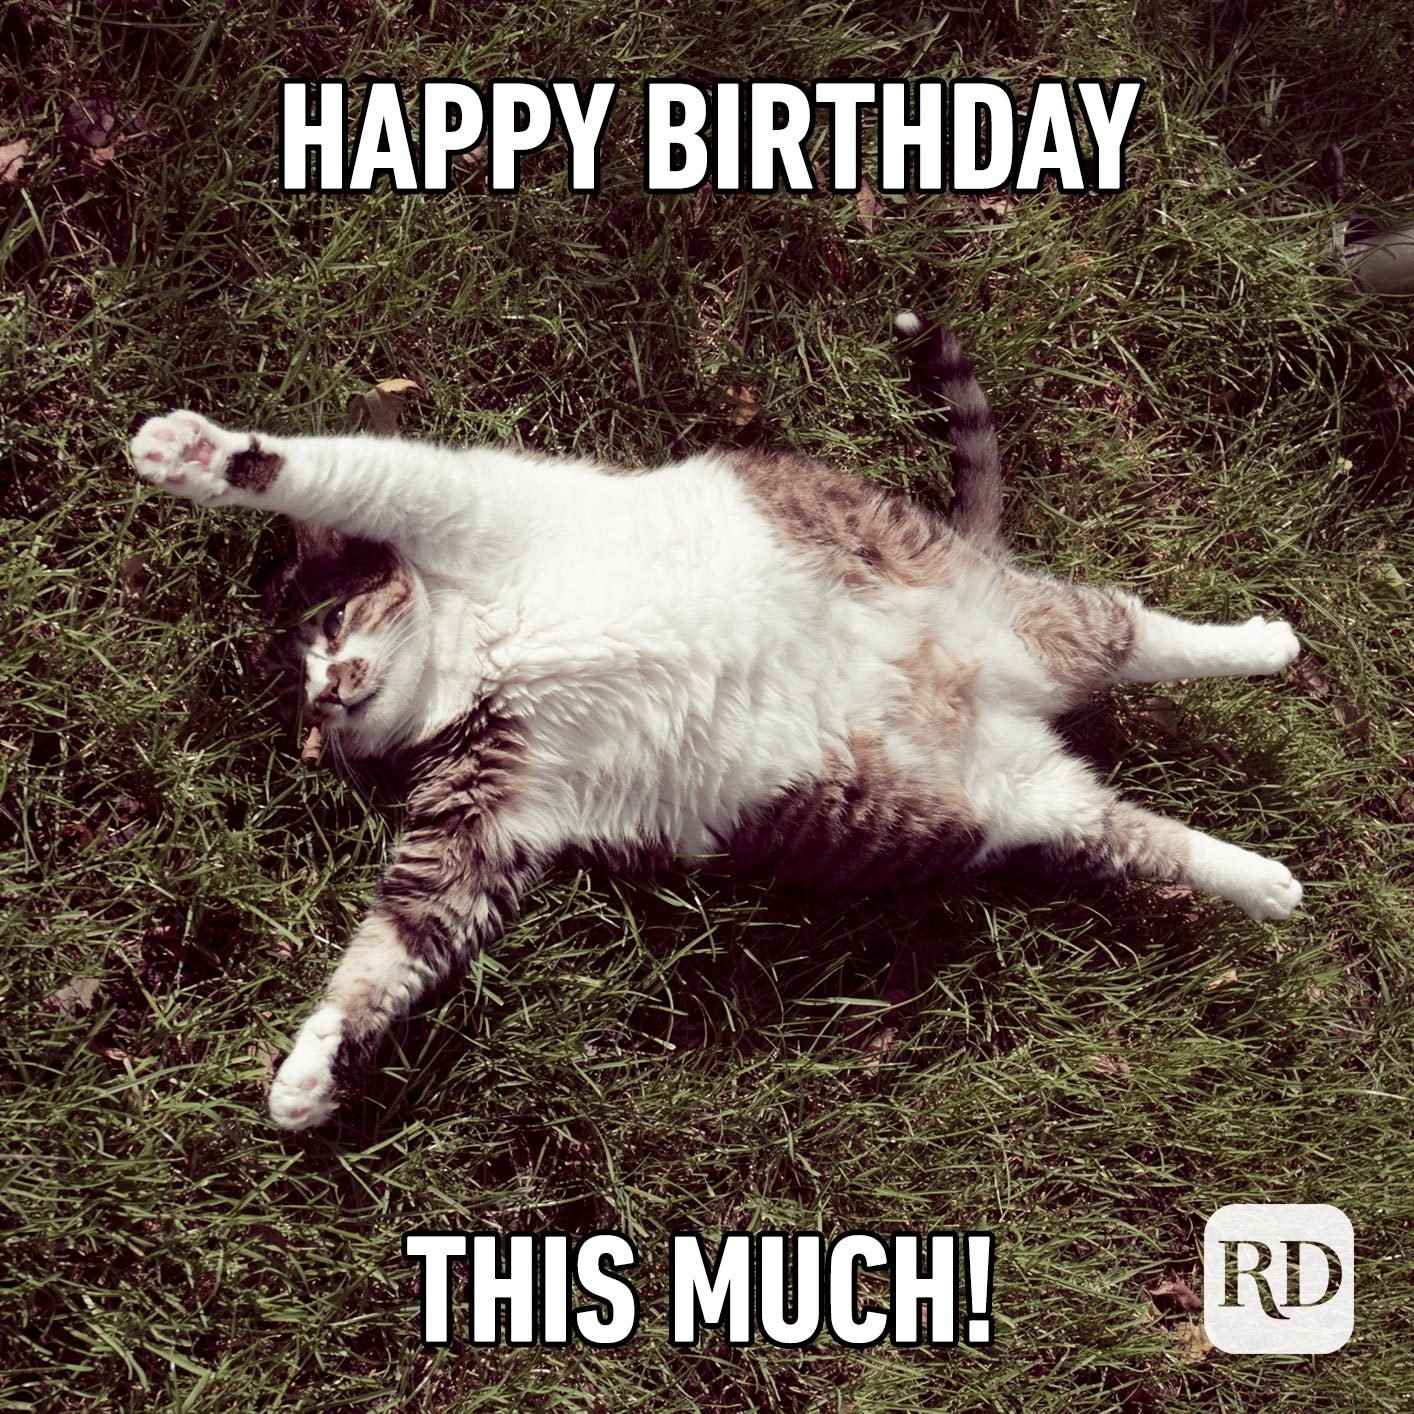 happy birthday cat meme